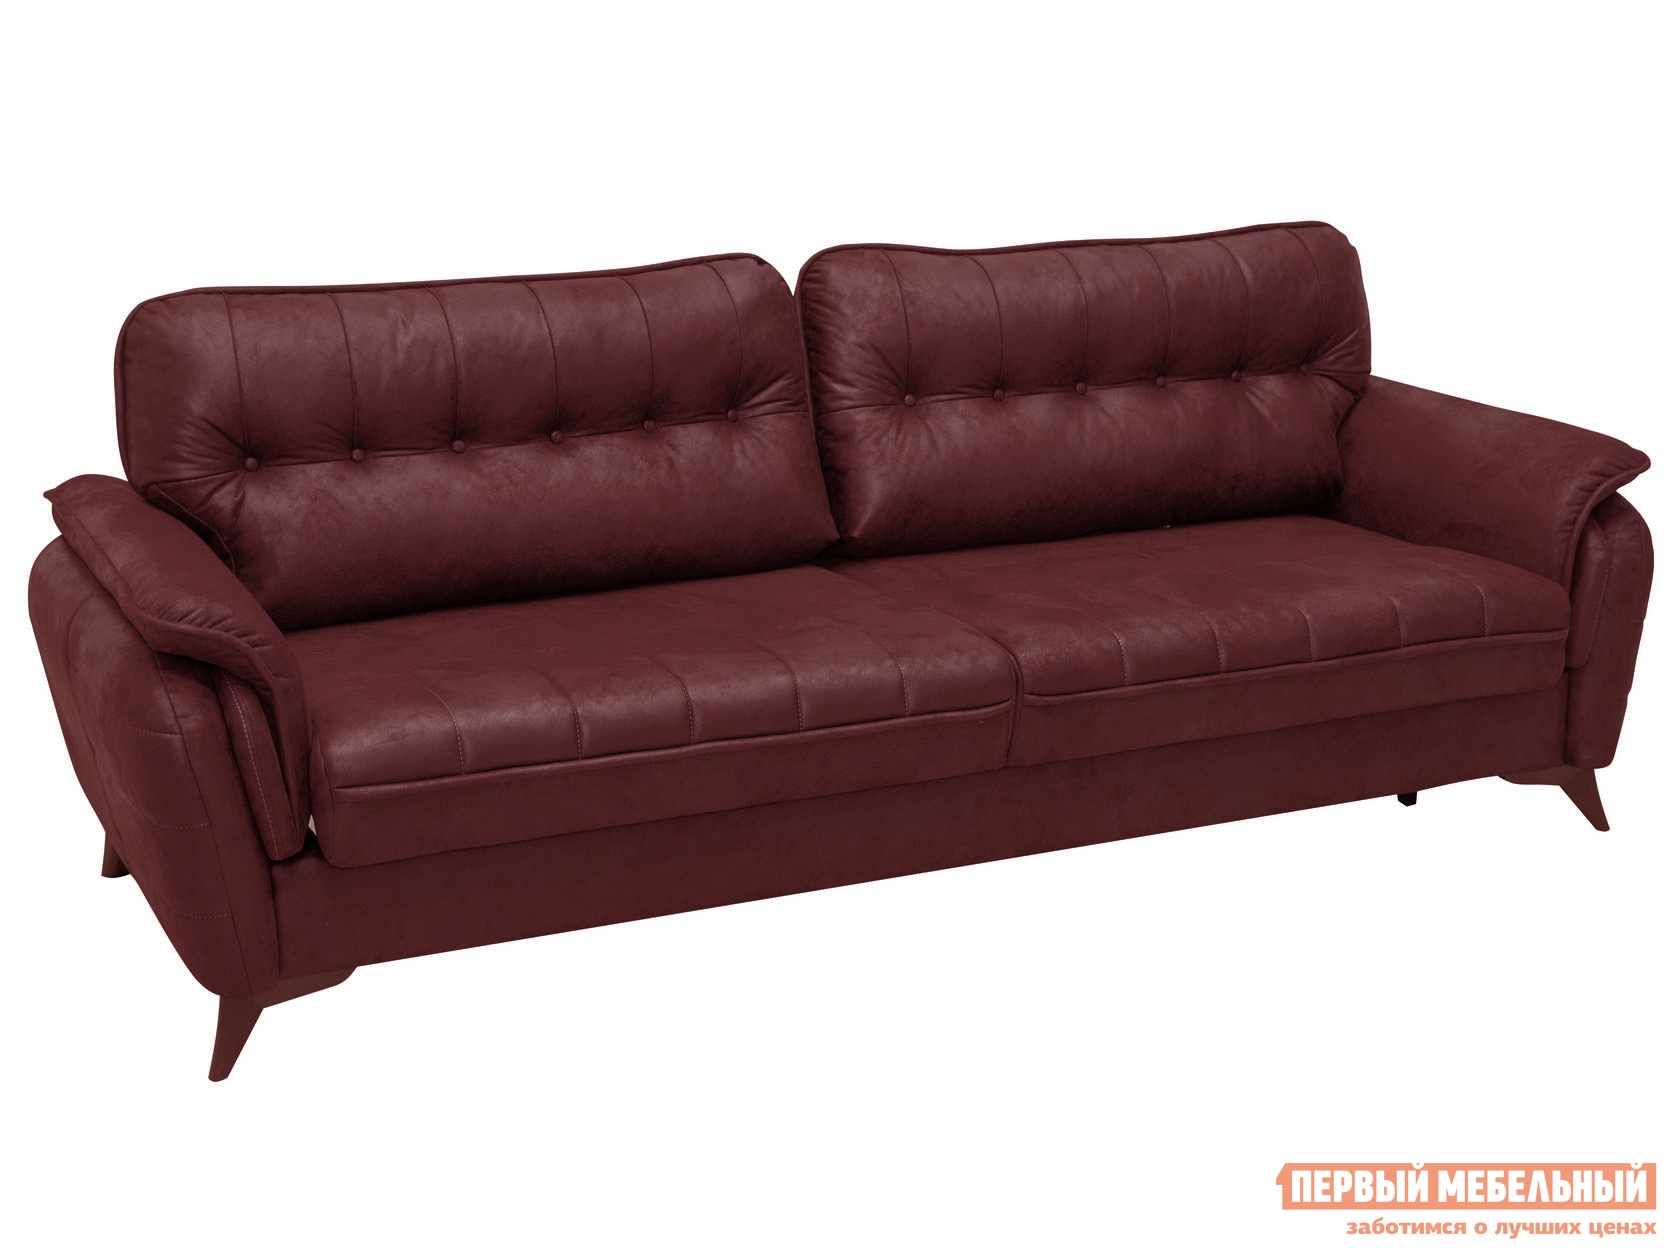 Прямой диван дорис диван-кровать красный, иск. замша